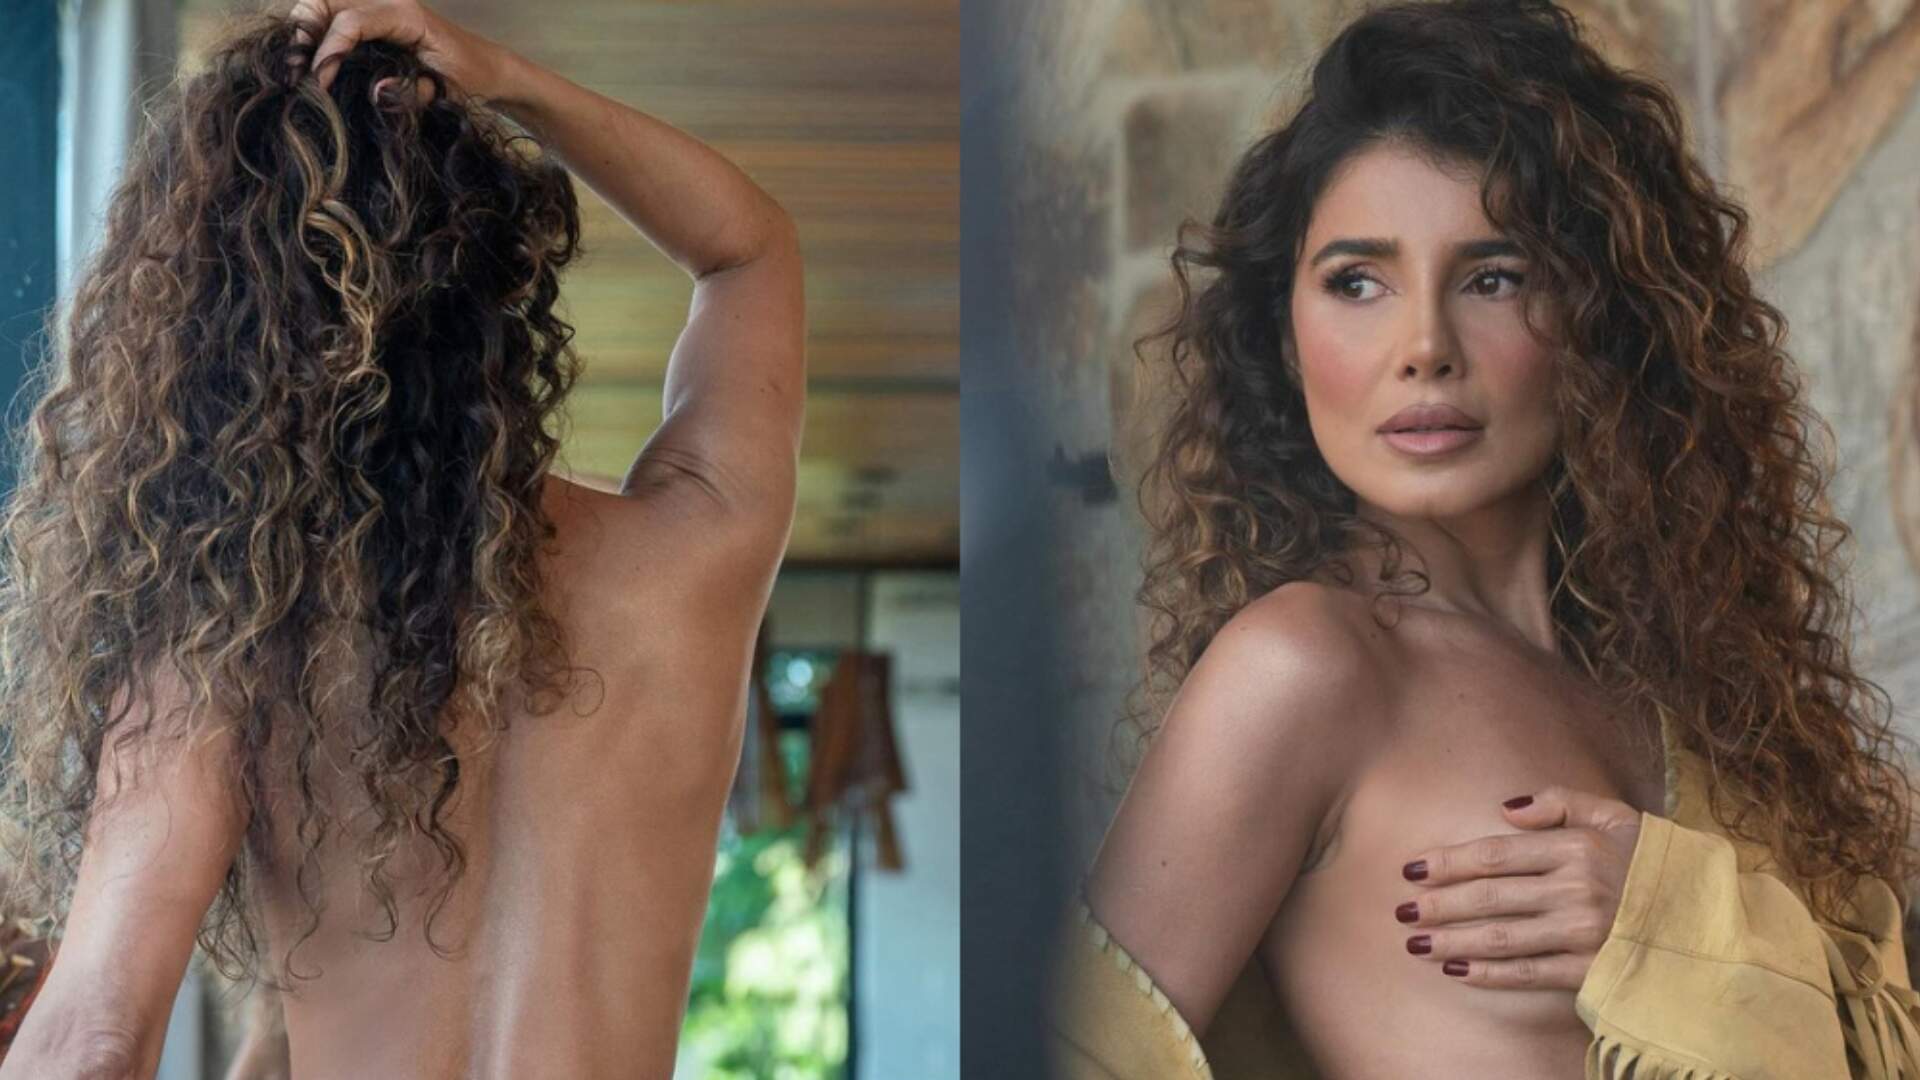 Paula Fernandes divulga ensaio polêmico no Instagram e manda indireta para o ex: “O que você perdeu” - Metropolitana FM